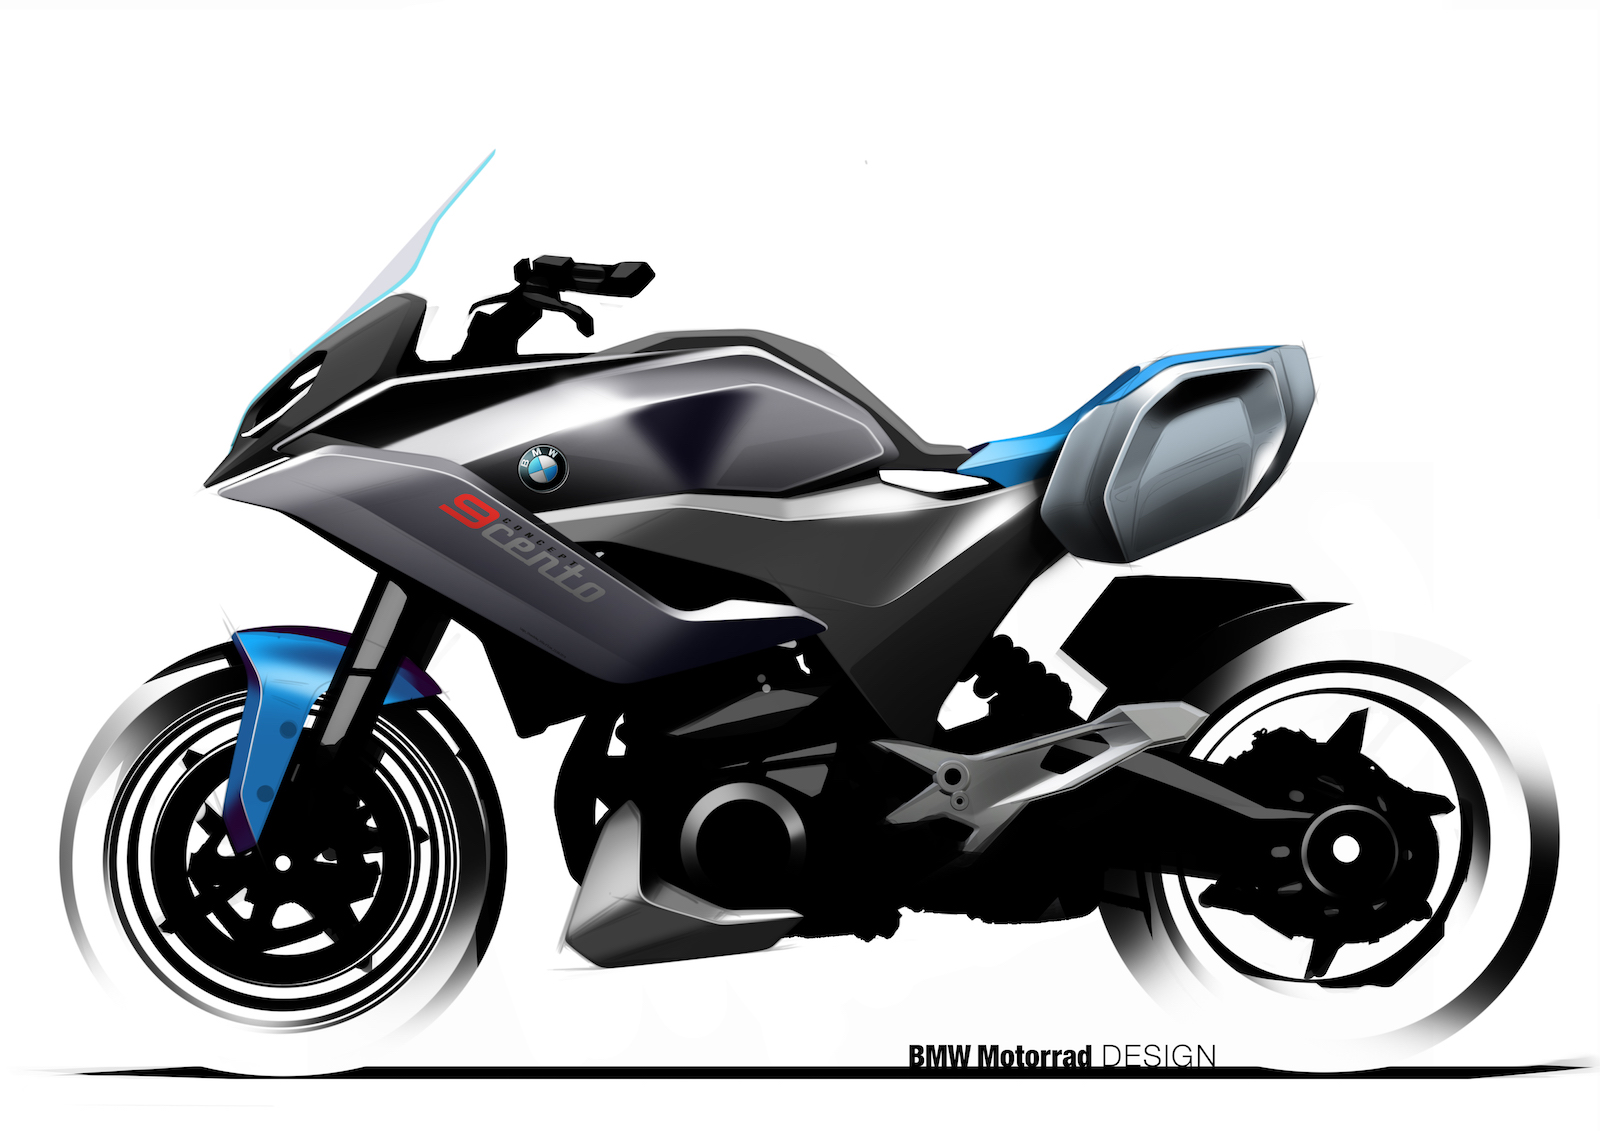 BMW 9Cento concept bike